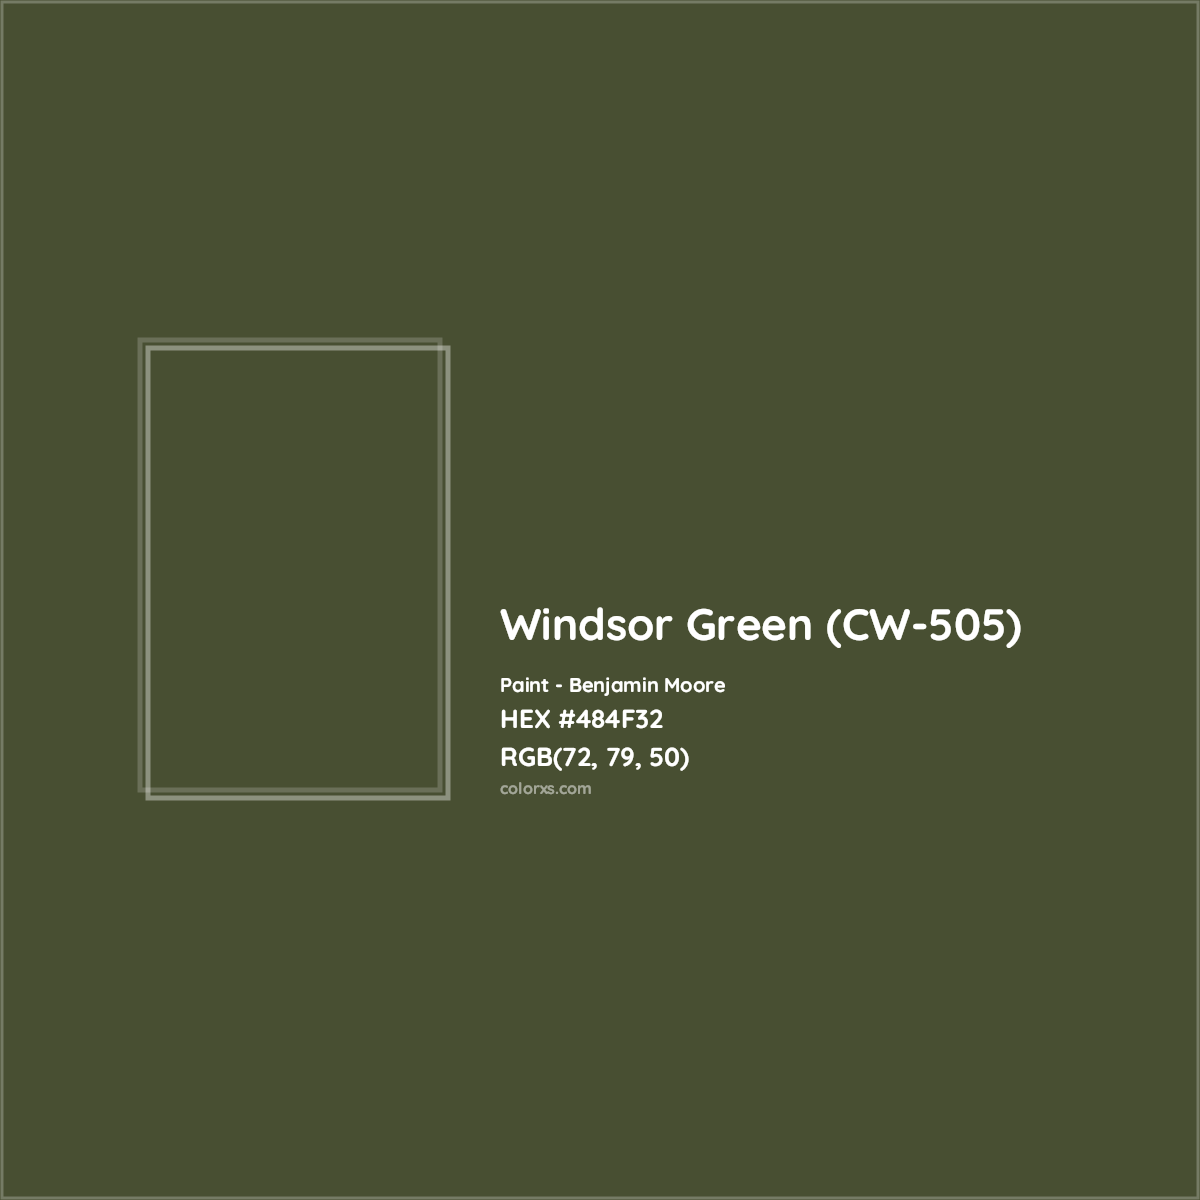 HEX #484F32 Windsor Green (CW-505) Paint Benjamin Moore - Color Code